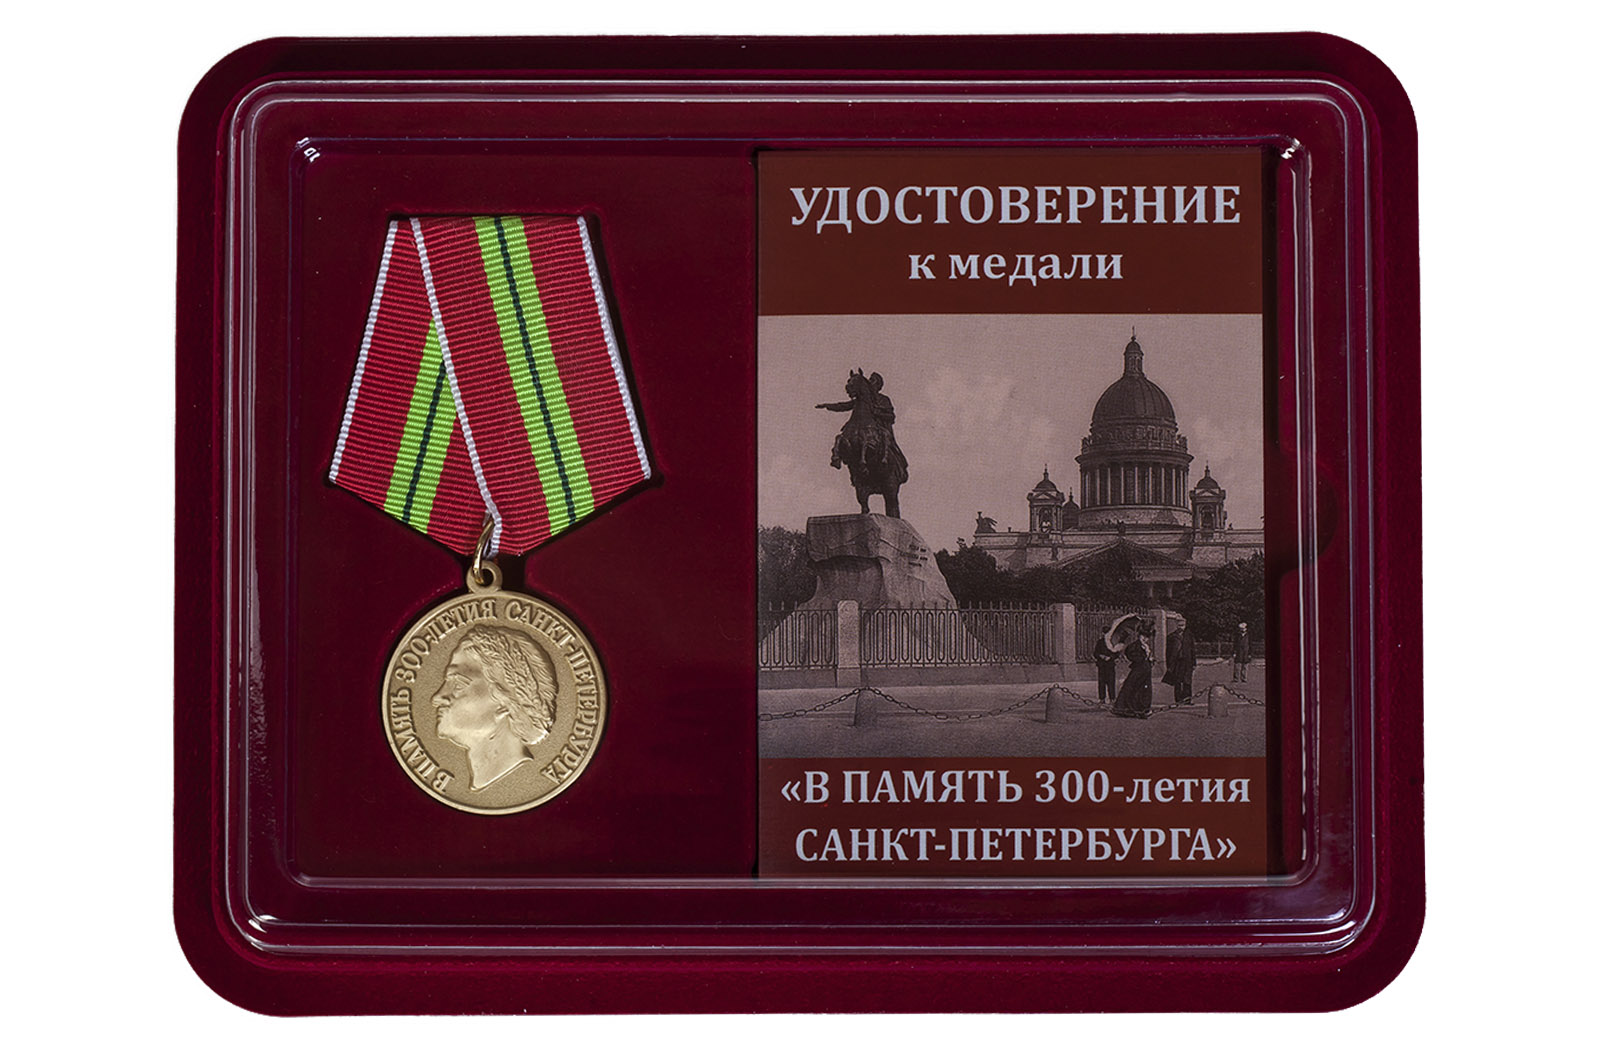 Купить памятную медаль 300-лет Санкт-Петербургу оптом или в розницу